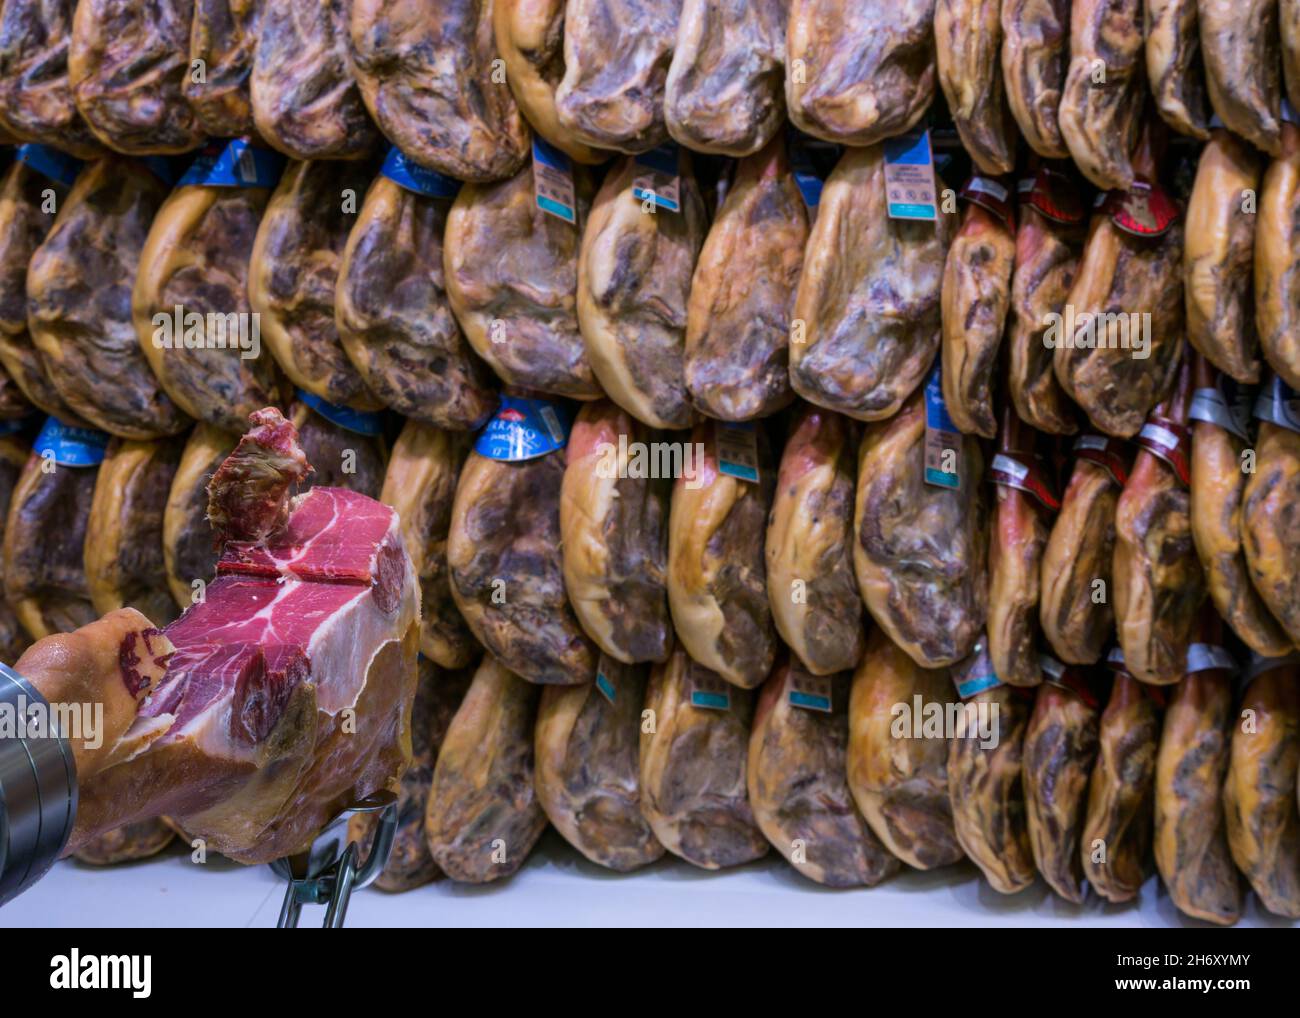 Piernas de jamón ibérico y serrano ahumadas españolas colgadas en el supermercado, Andalucía, España, Europa Foto de stock